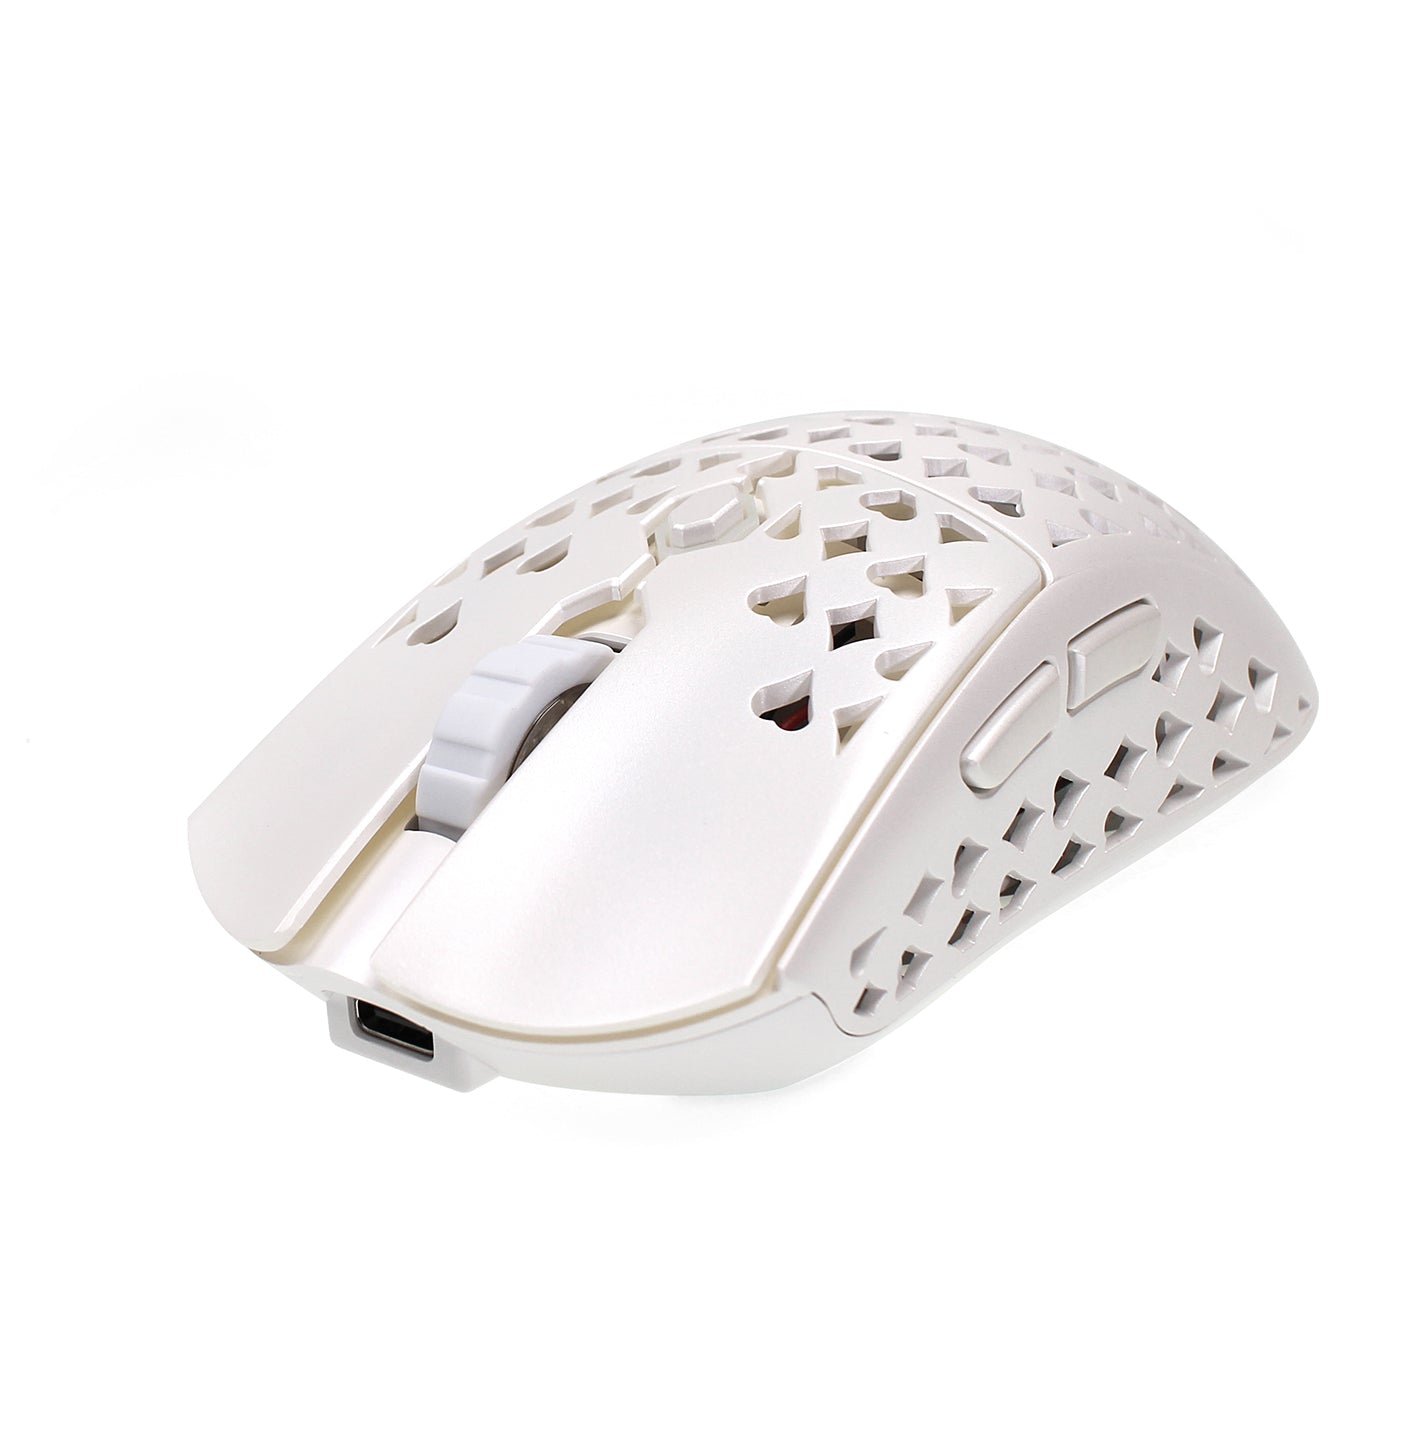 Vancer™ Gretxa Wireless Gaming Mouse V2 - Pearl White